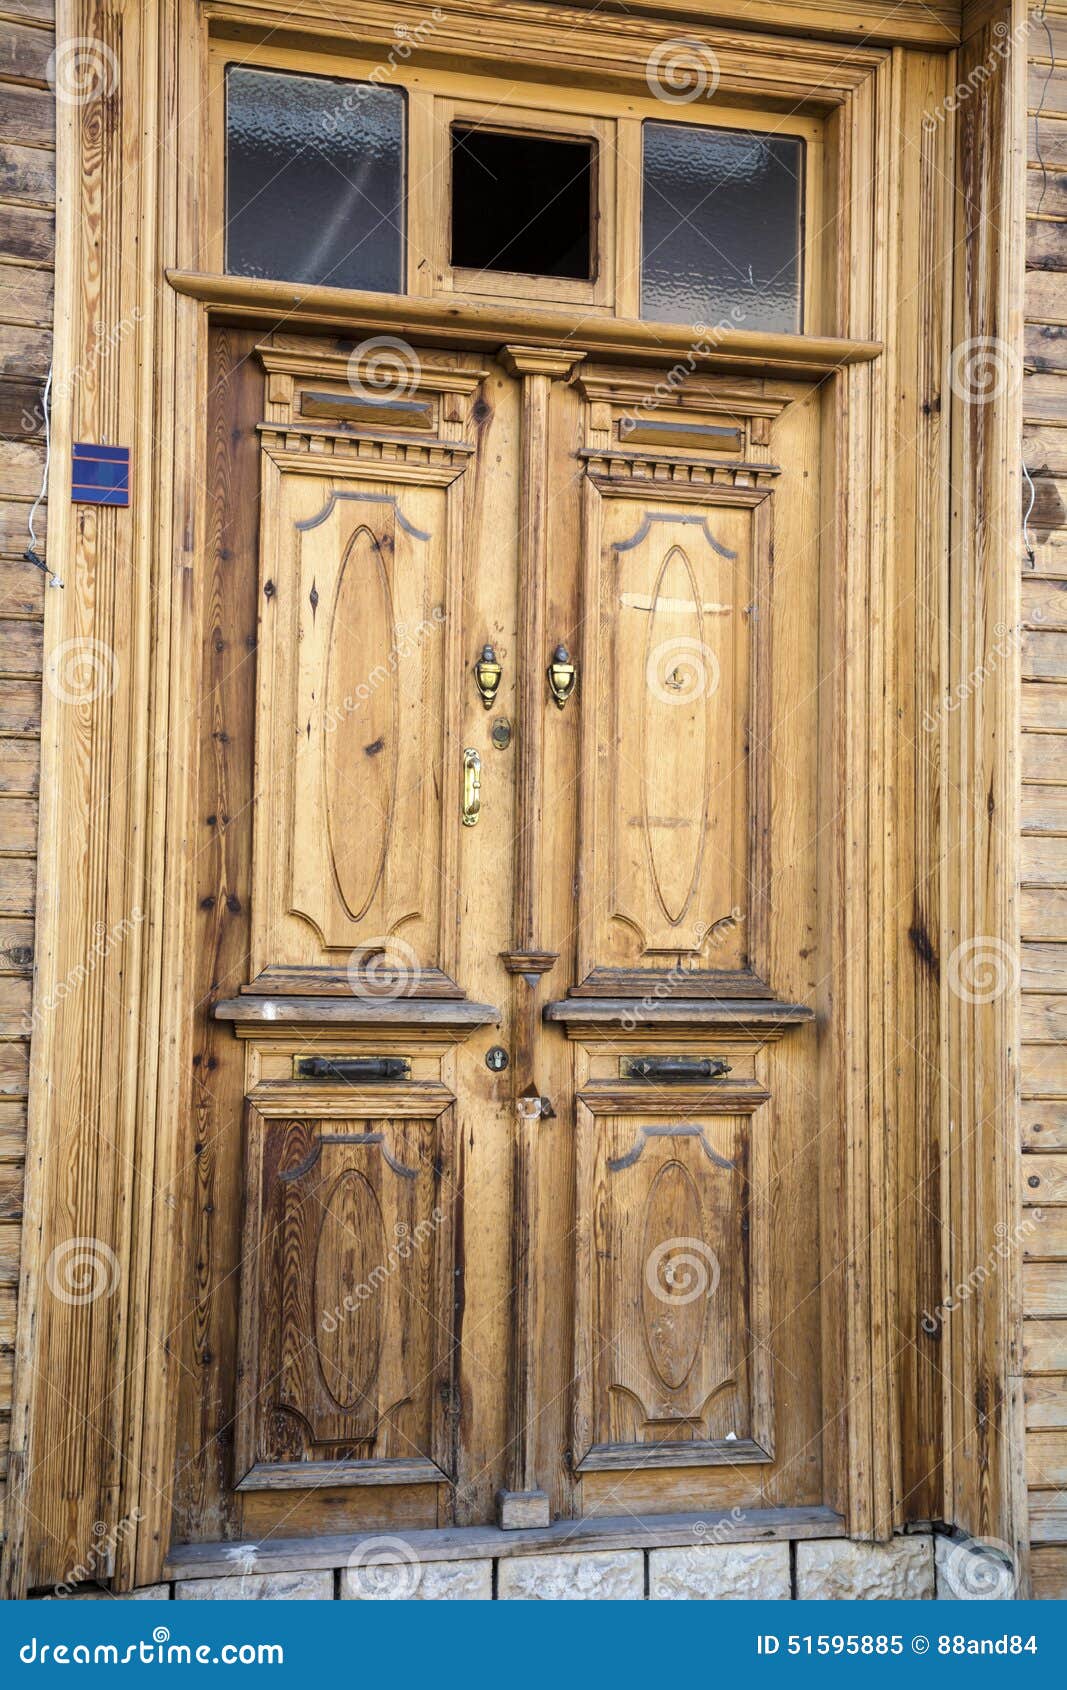 Wooden front door stock image. Image of artistic, artwork - 51595885